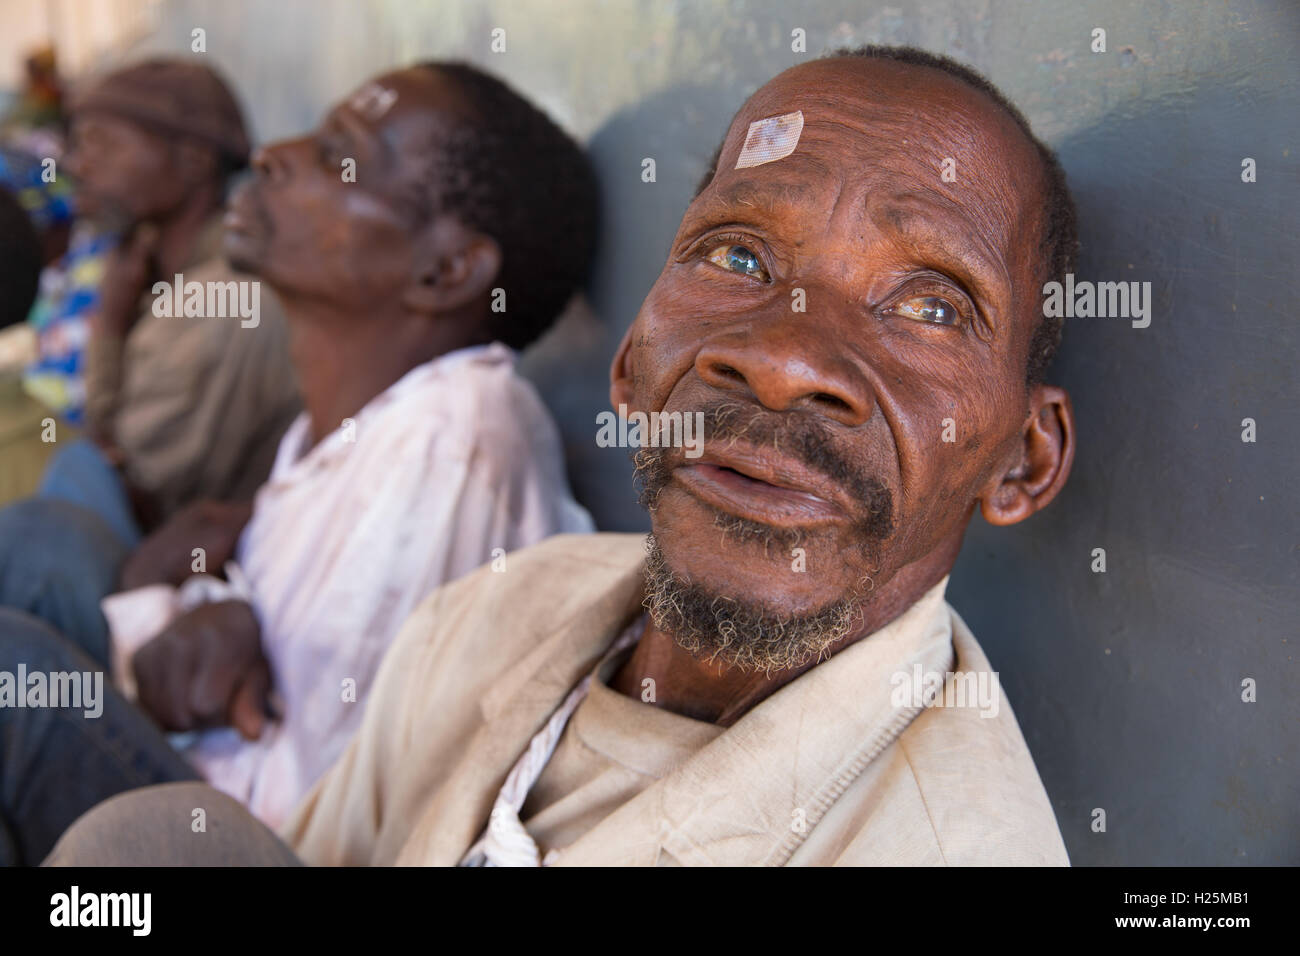 Ribue Hôpital, la province de Nampula, Mozambique, Août 2015 : Jeronimo De Kunamuetho Mecuburi en attente de son opération de la cataracte. Photo de Mike Goldwater Banque D'Images